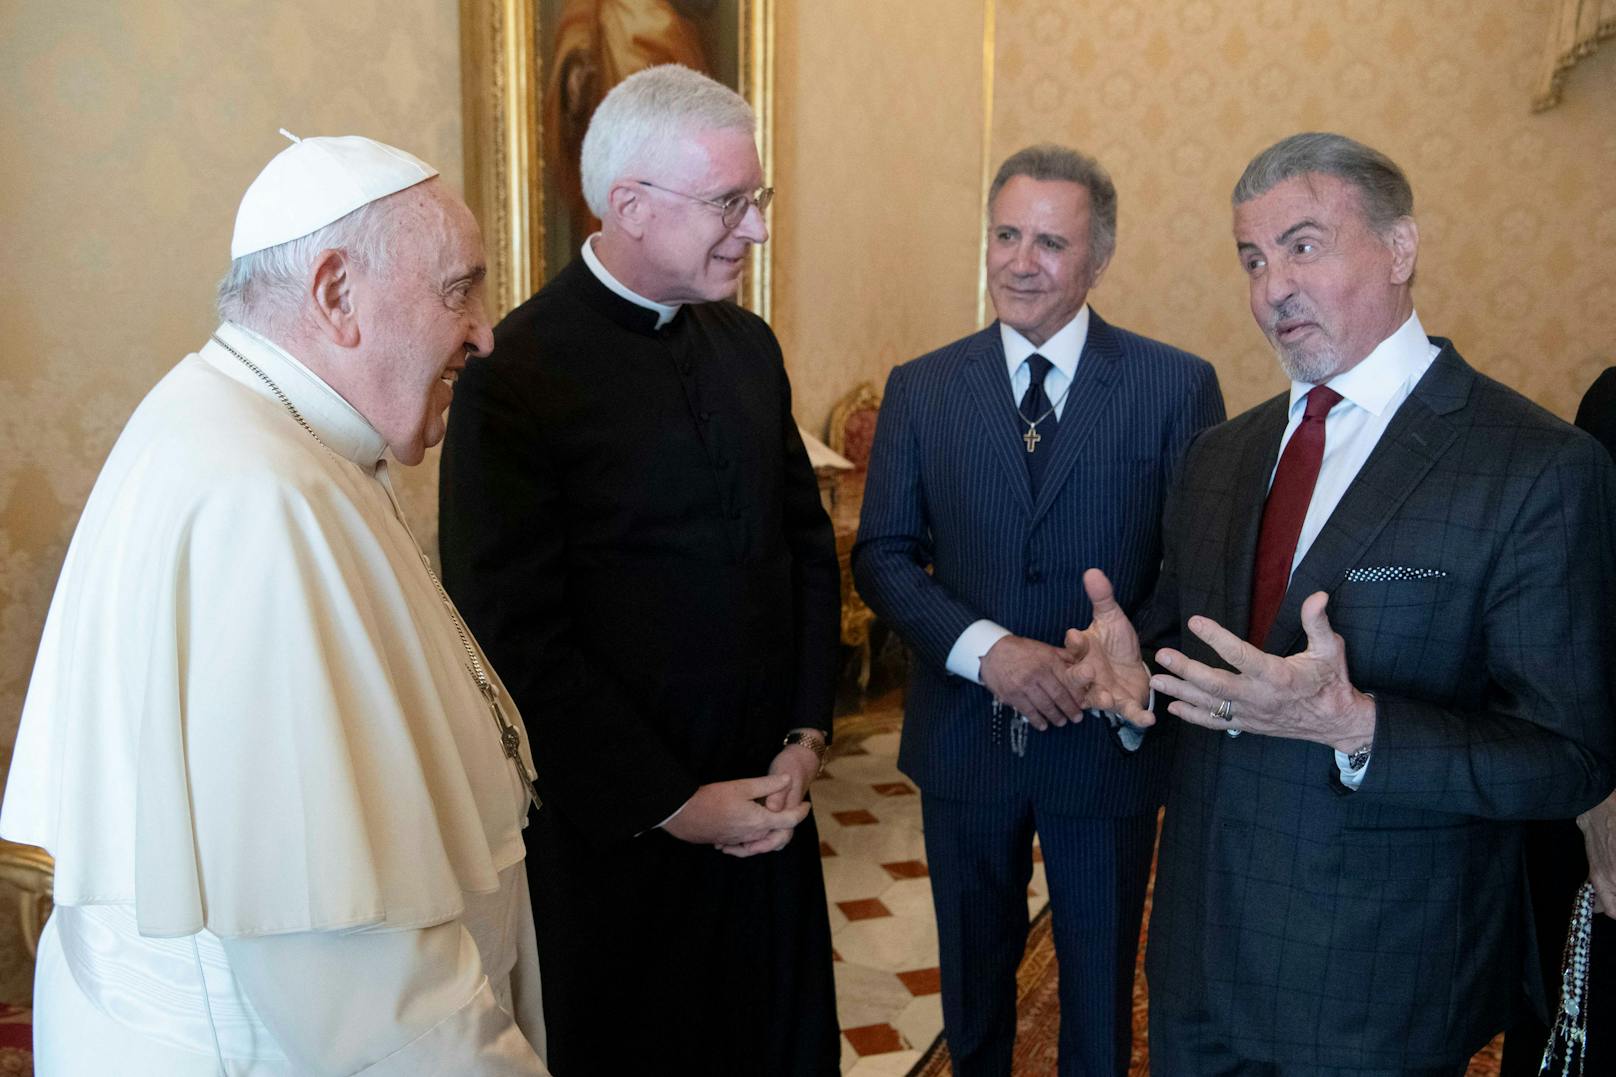 Beim Treffen zwischen dem Papst und Stallone brachte der Schauspieler auch seine Familie mit. Hier im Bild, sein Bruder Frank neben dem "Rocky"-Star.